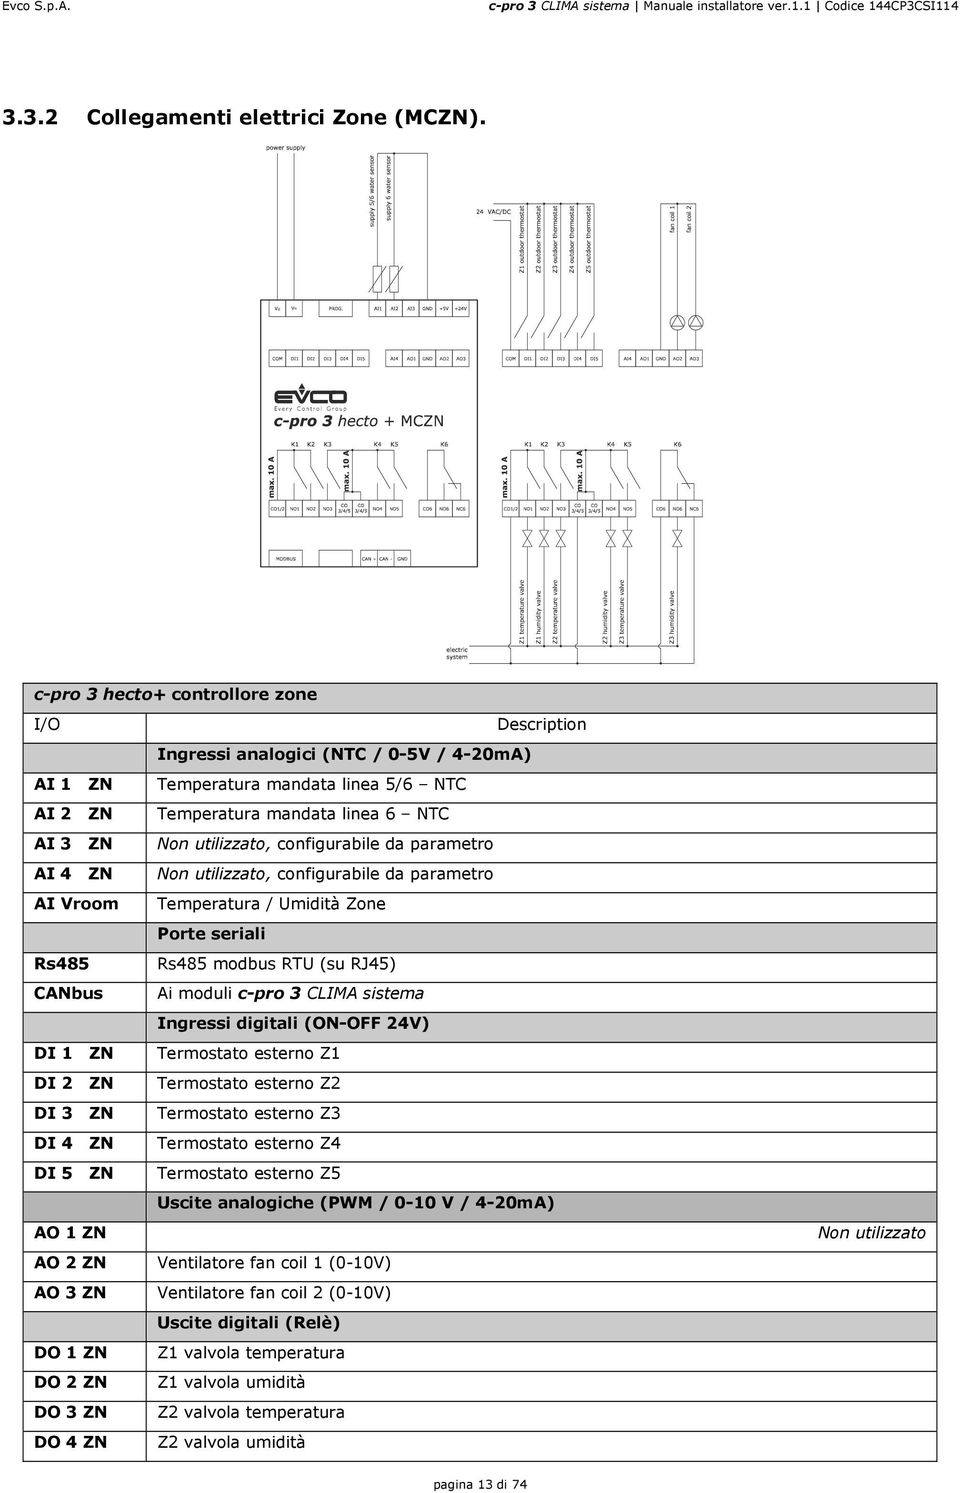 Ingressi analogici (NTC / 0-5V / 4-20mA) Temperatura mandata linea 5/6 NTC Temperatura mandata linea 6 NTC Non utilizzato, configurabile da parametro Non utilizzato, configurabile da parametro